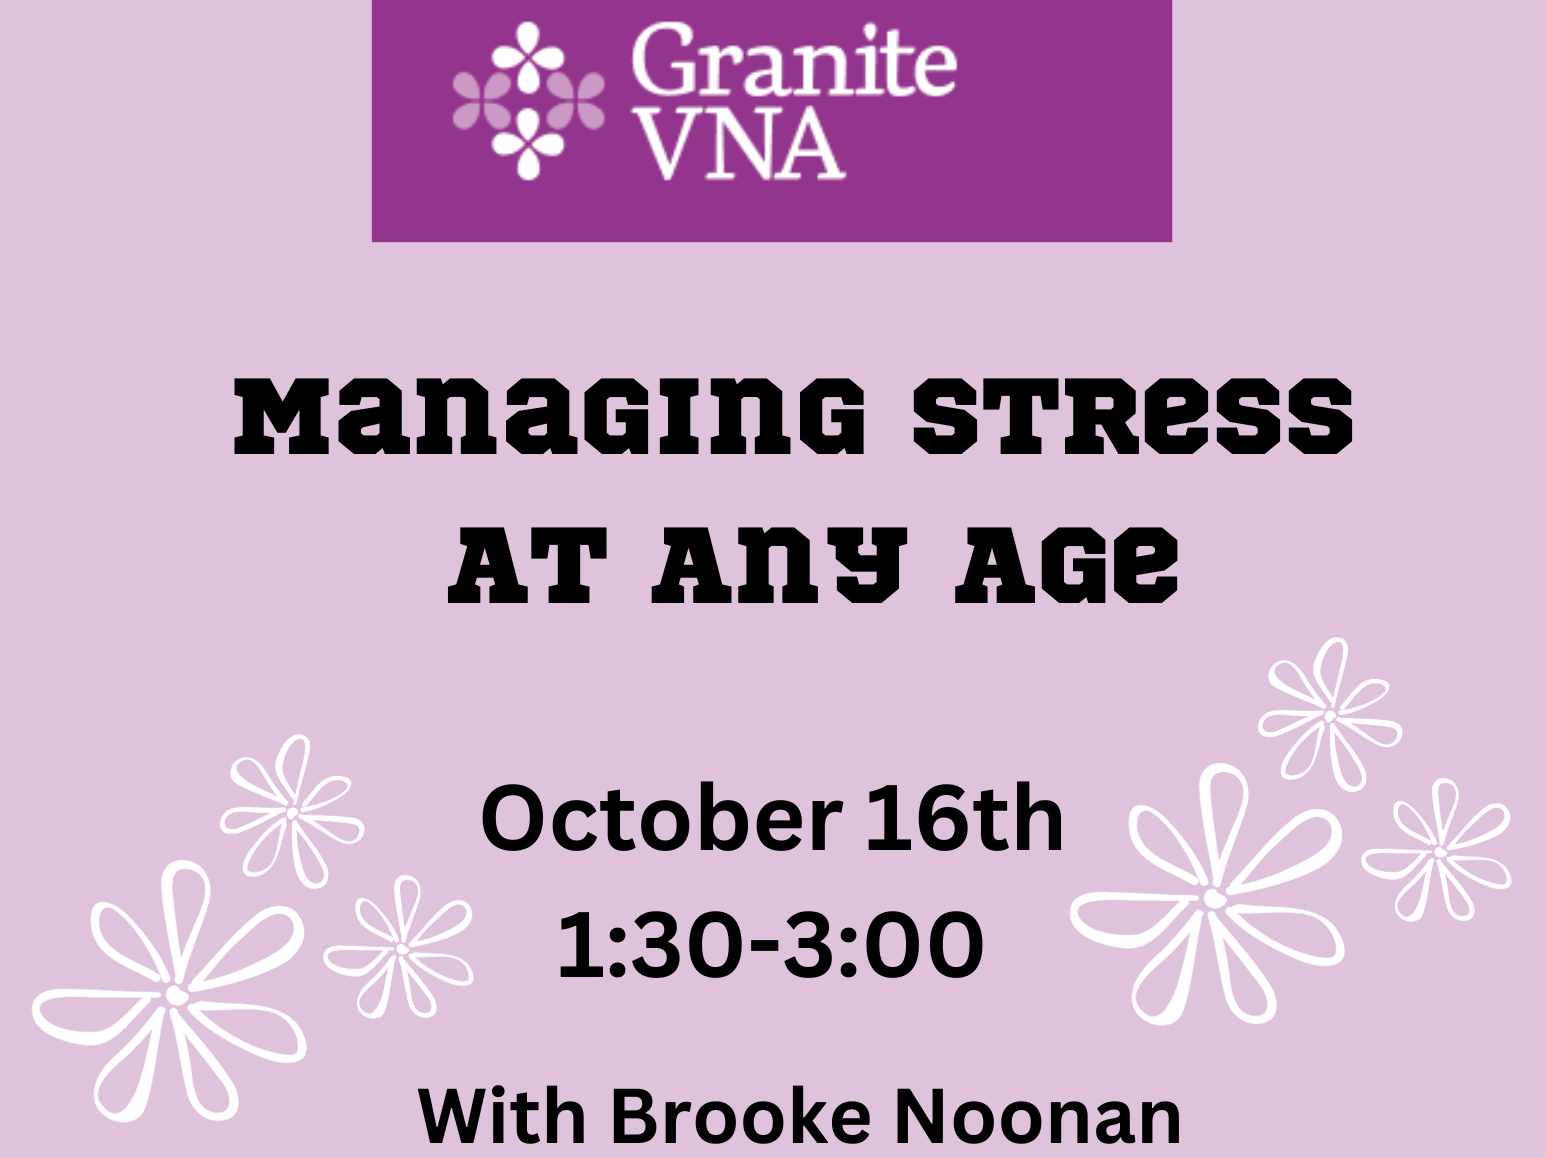 Managing stress at any age